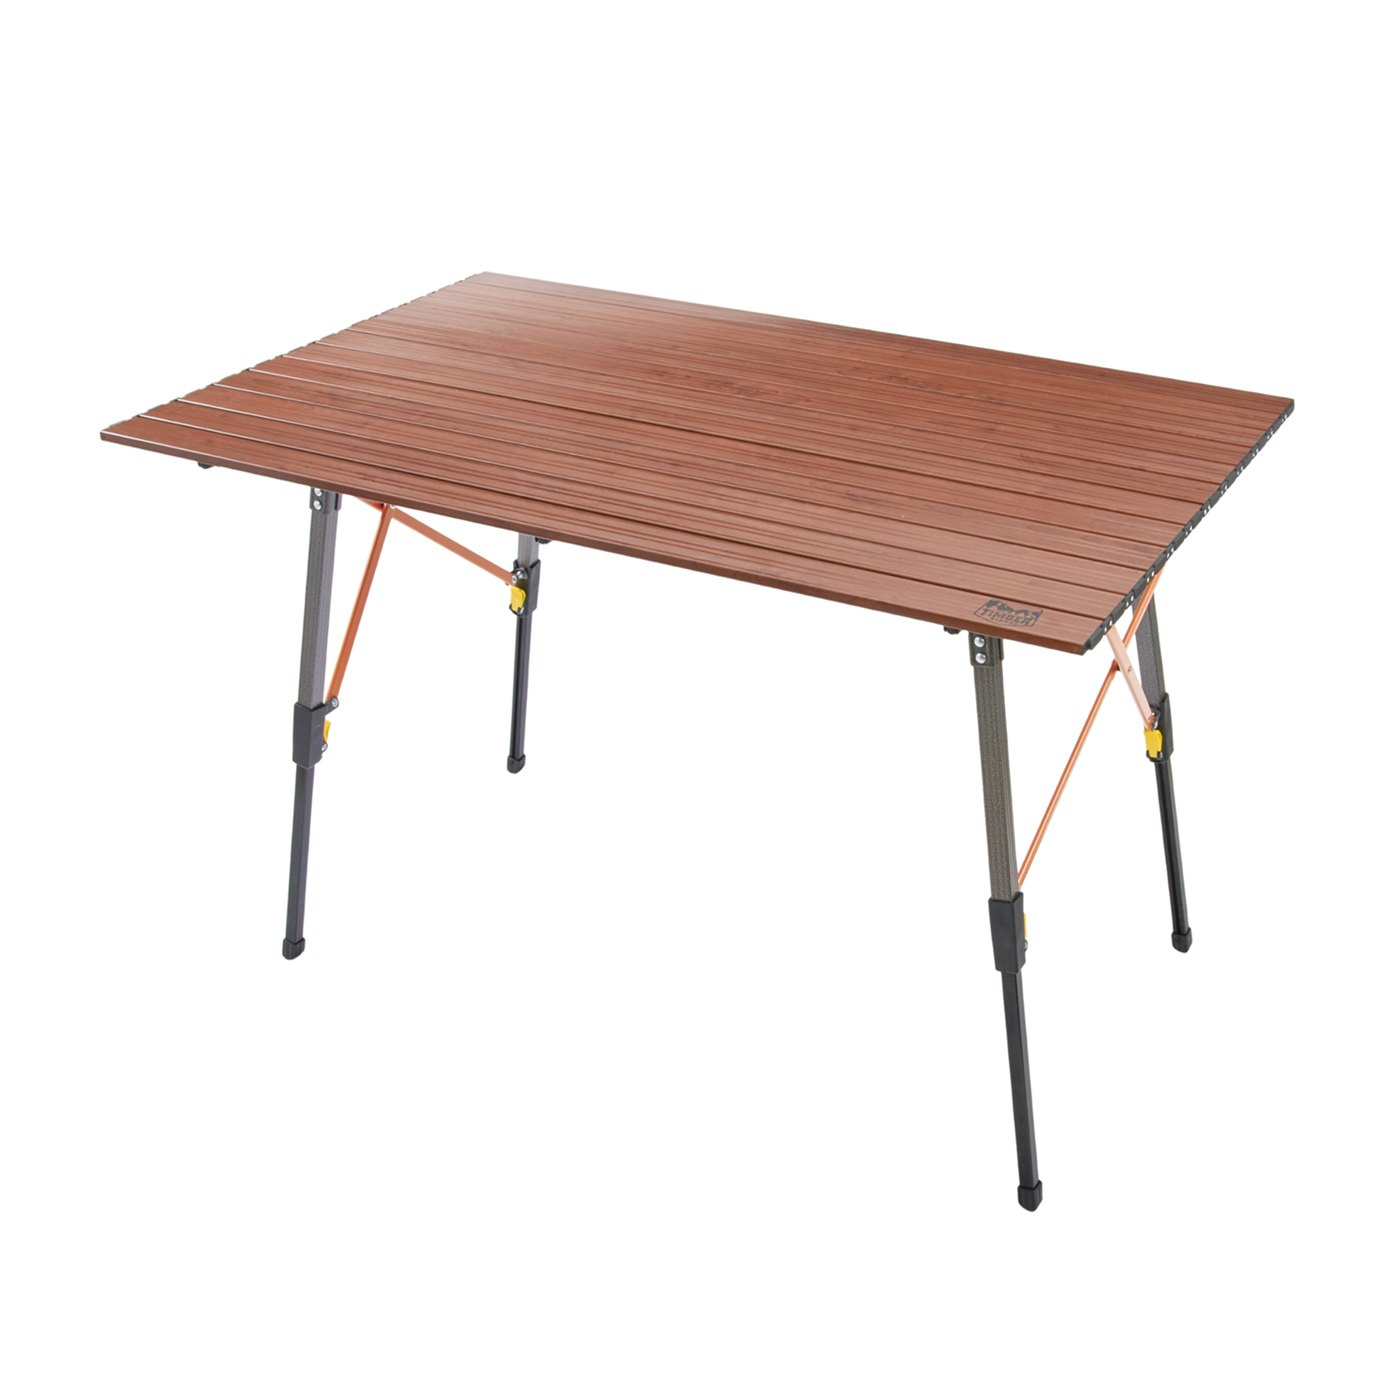 WAQ Folding Wood Table フォールディングウッドテーブル テーブル 